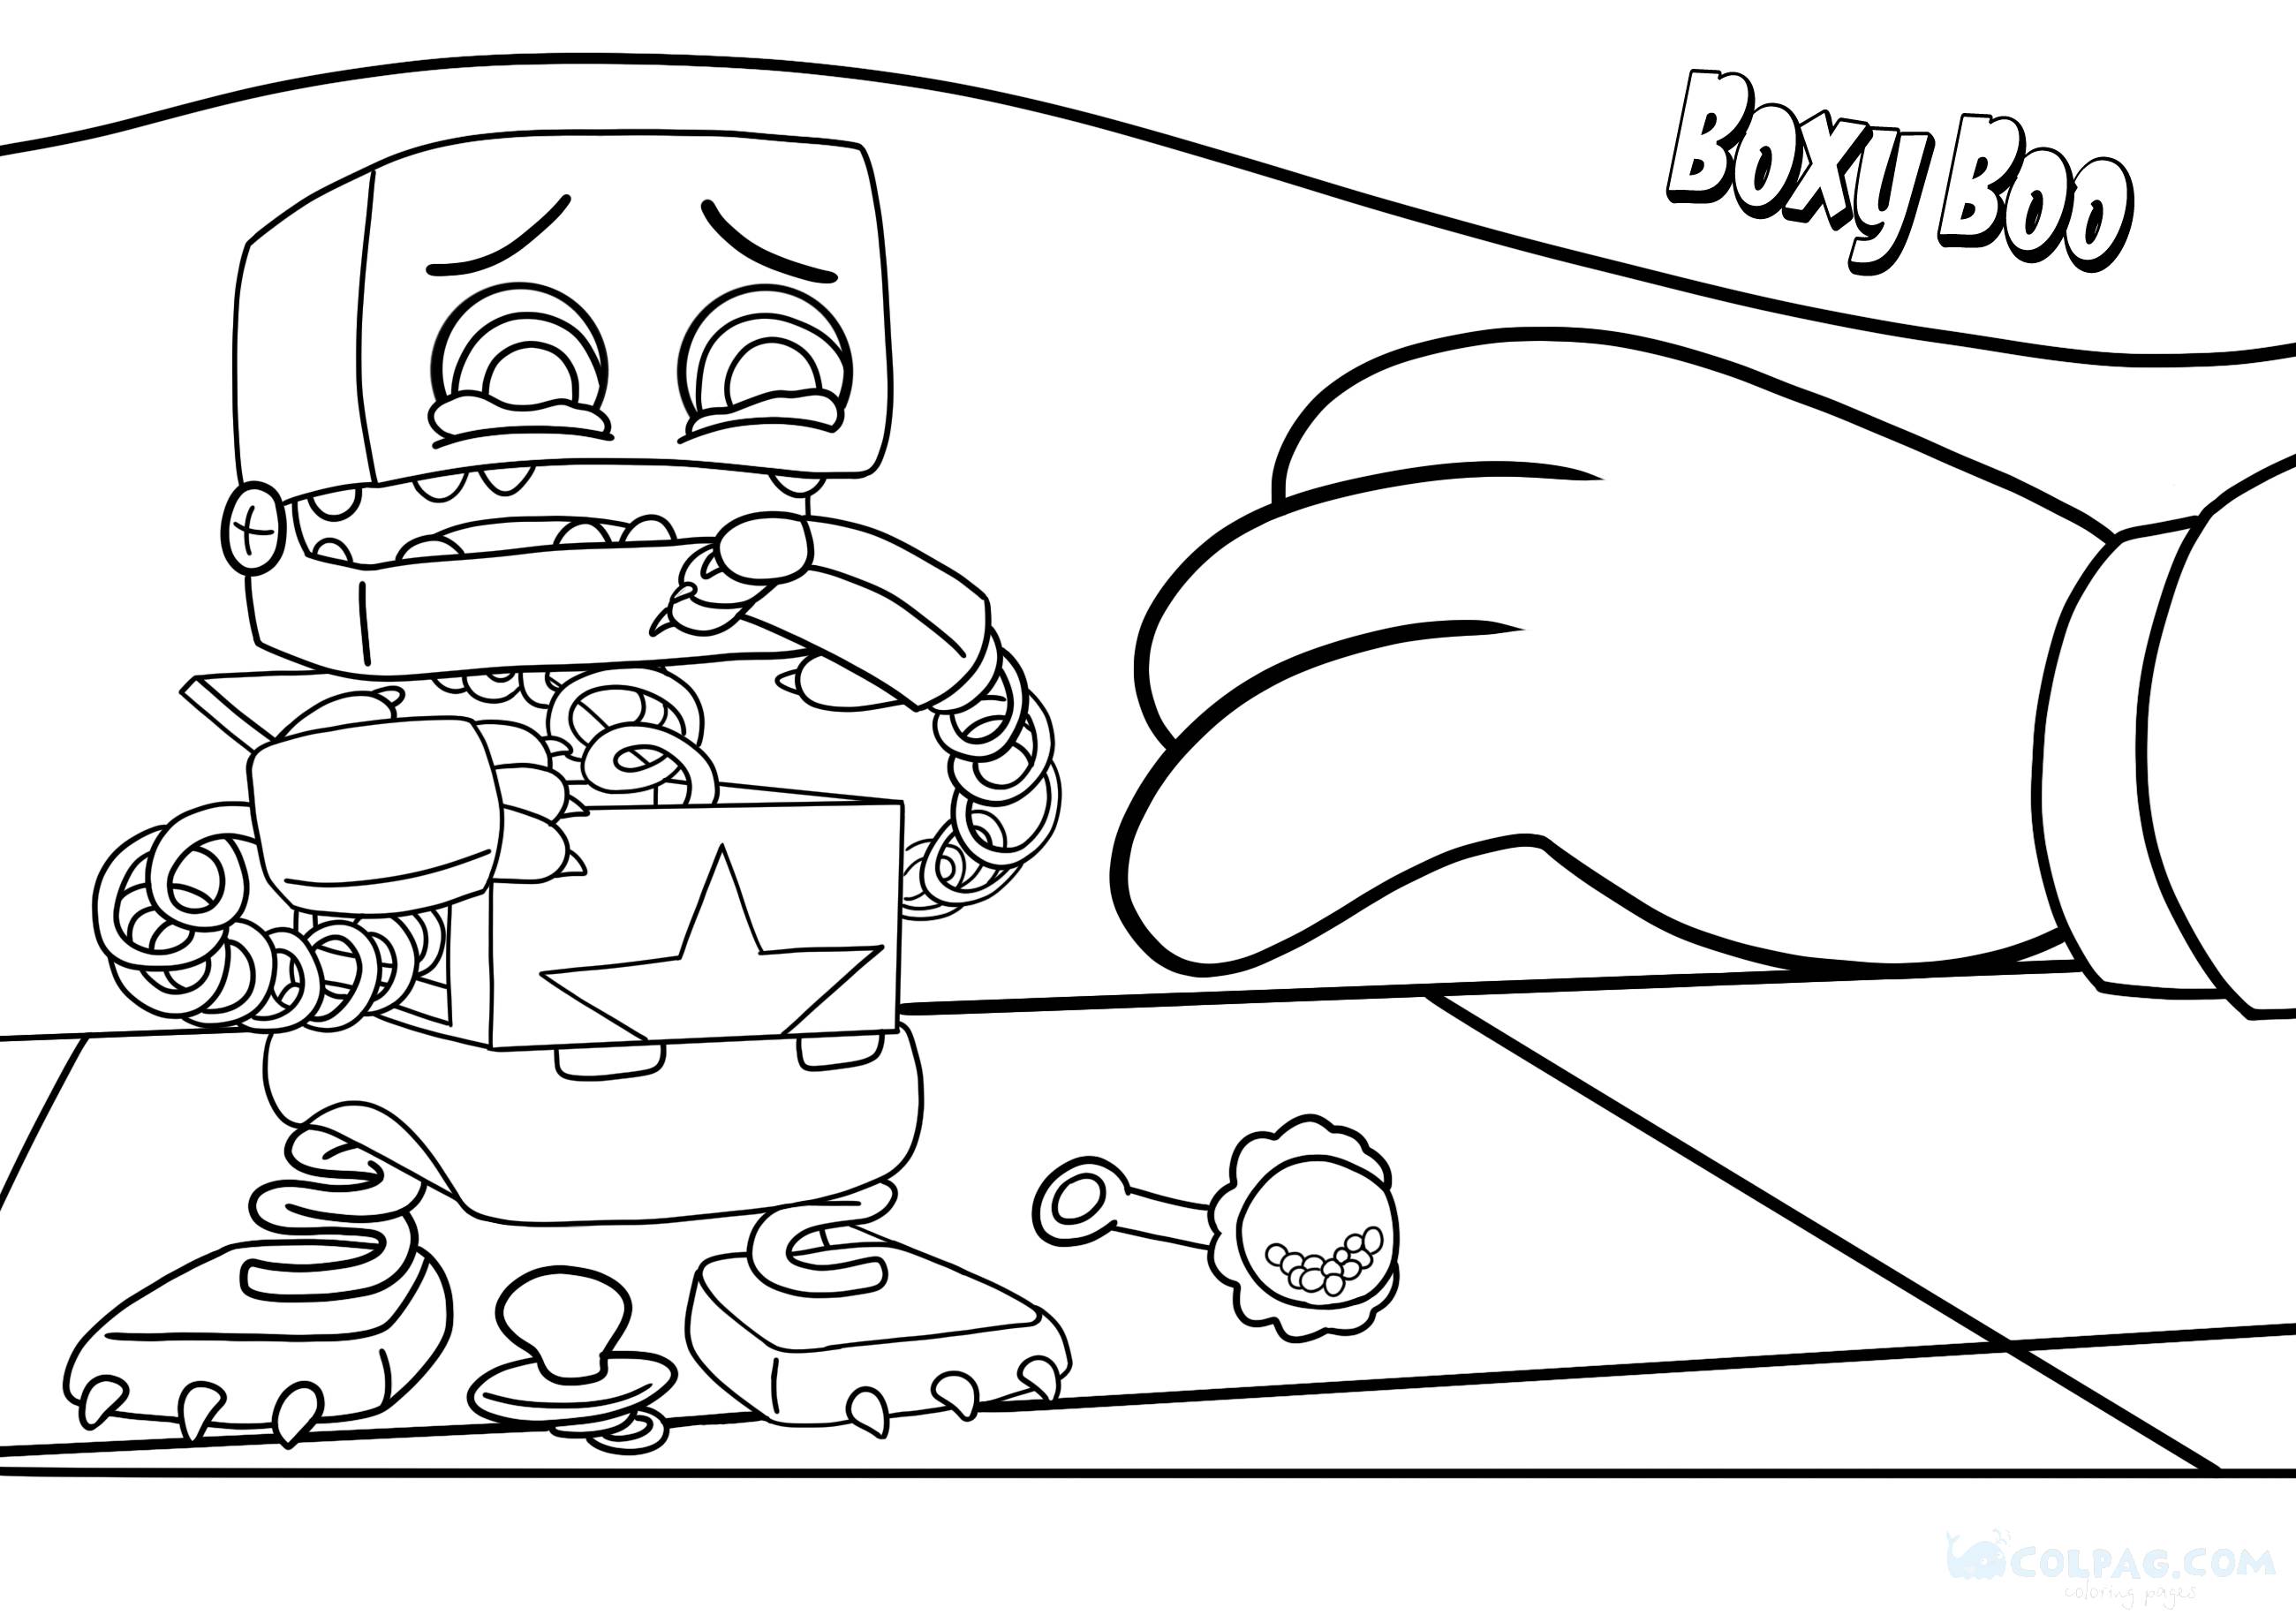 Disegni da colorare di Boxy Boo (Progetto: Playtime)